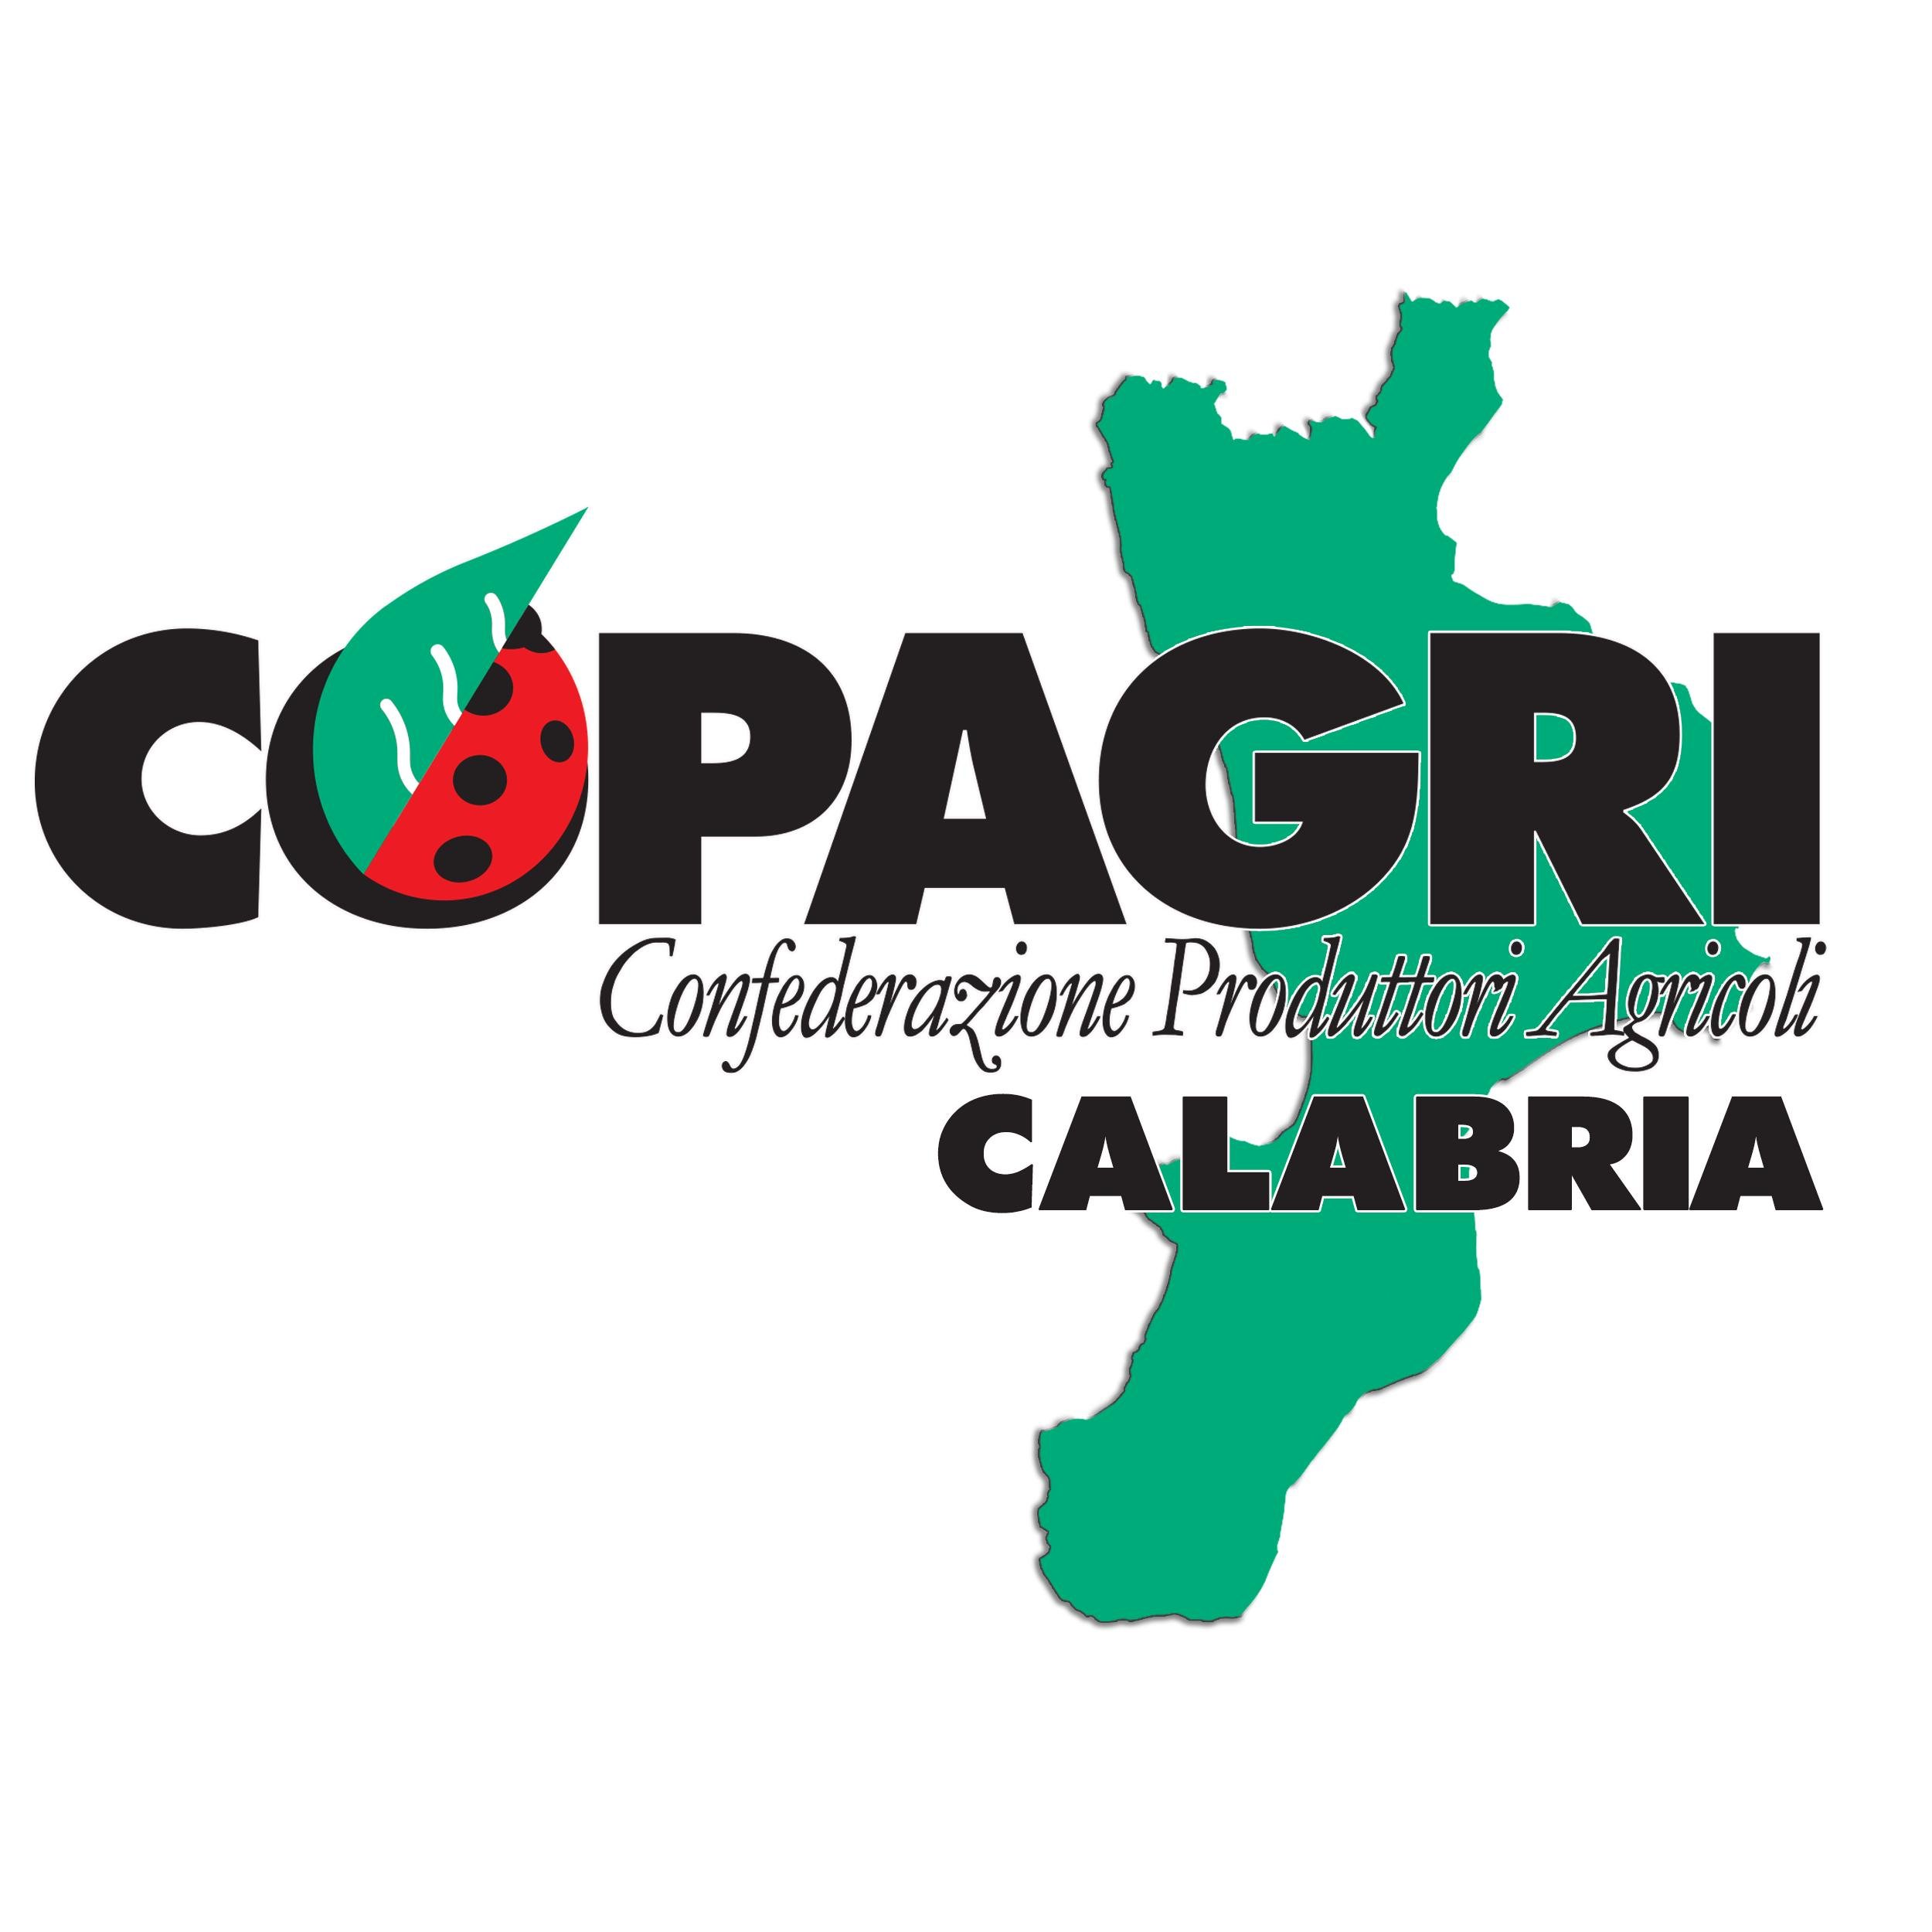 CopagriCalabria Profile Picture